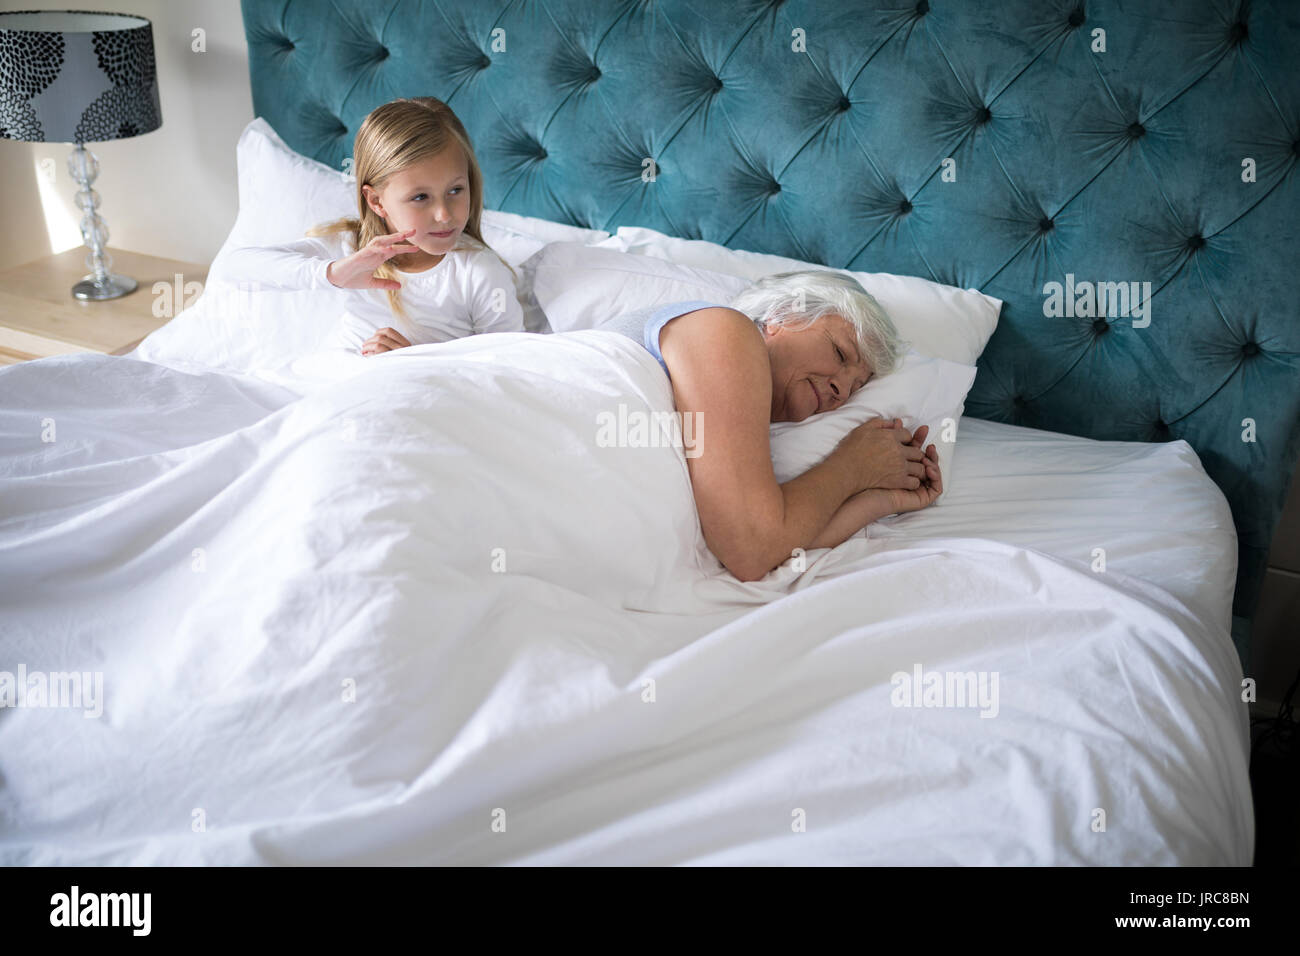 Großmutter schlafen auf Bett, während Mädchen hinter ihr im Schlafzimmer  sitzen Stockfotografie - Alamy